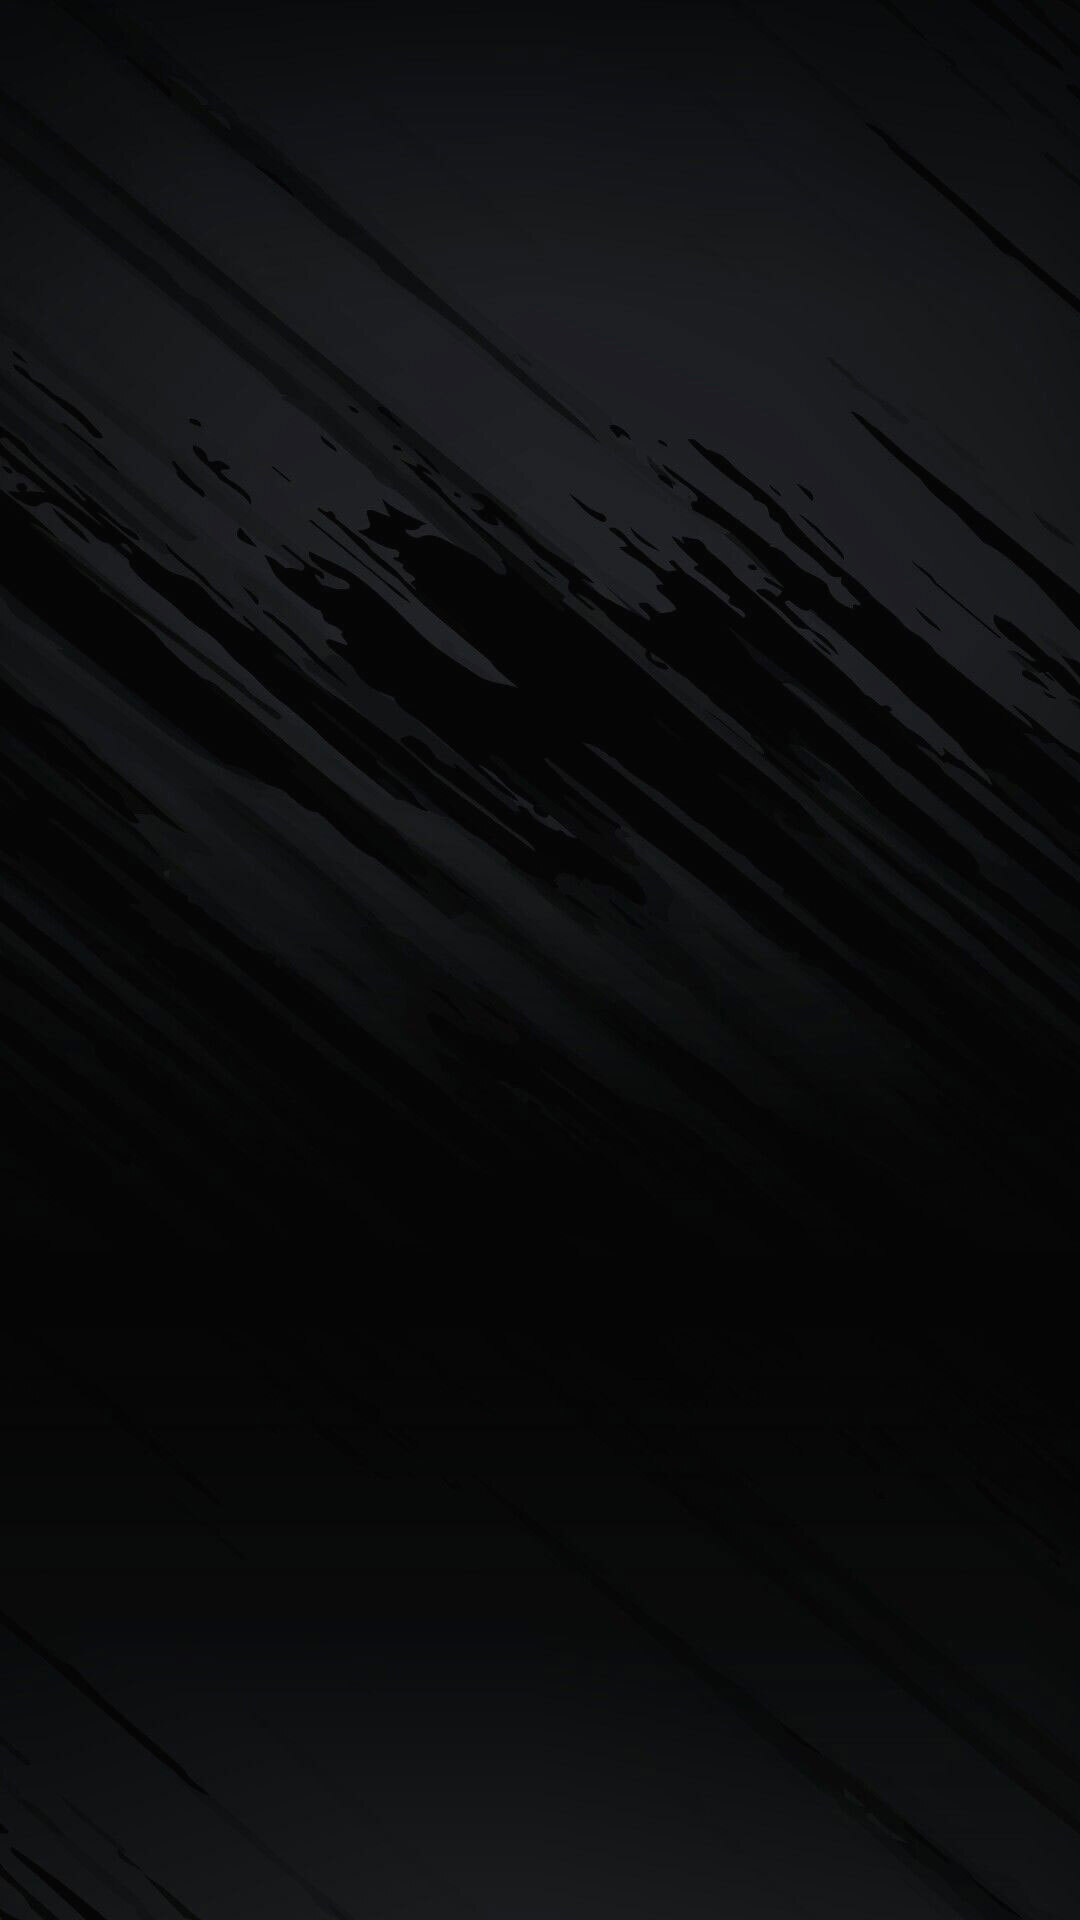 Background đen đẹp cho điện thoại di động.